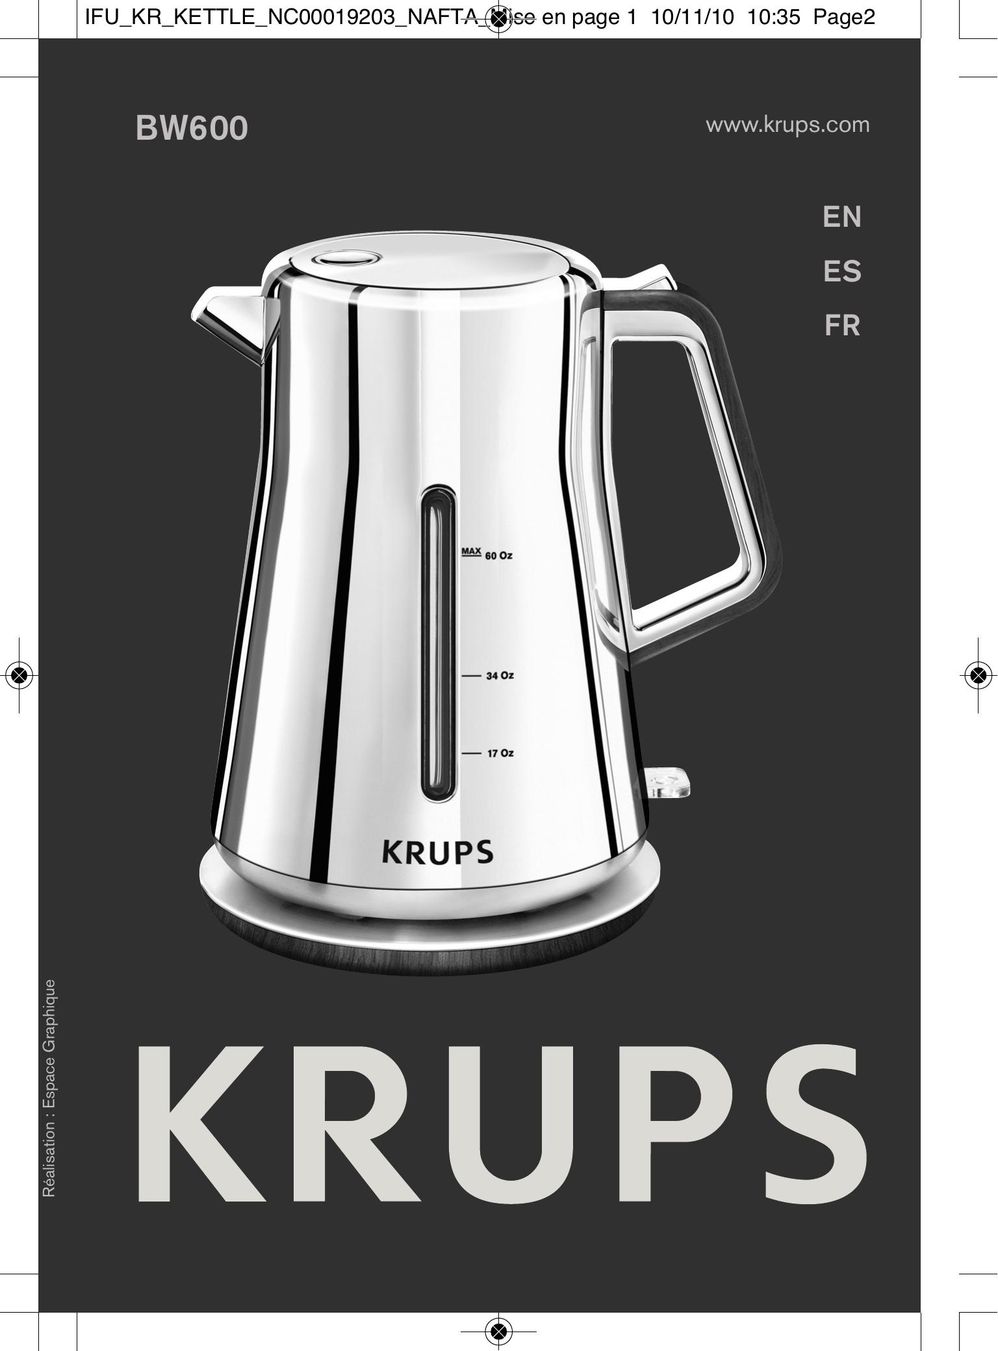 Krups BW600 Hot Beverage Maker User Manual